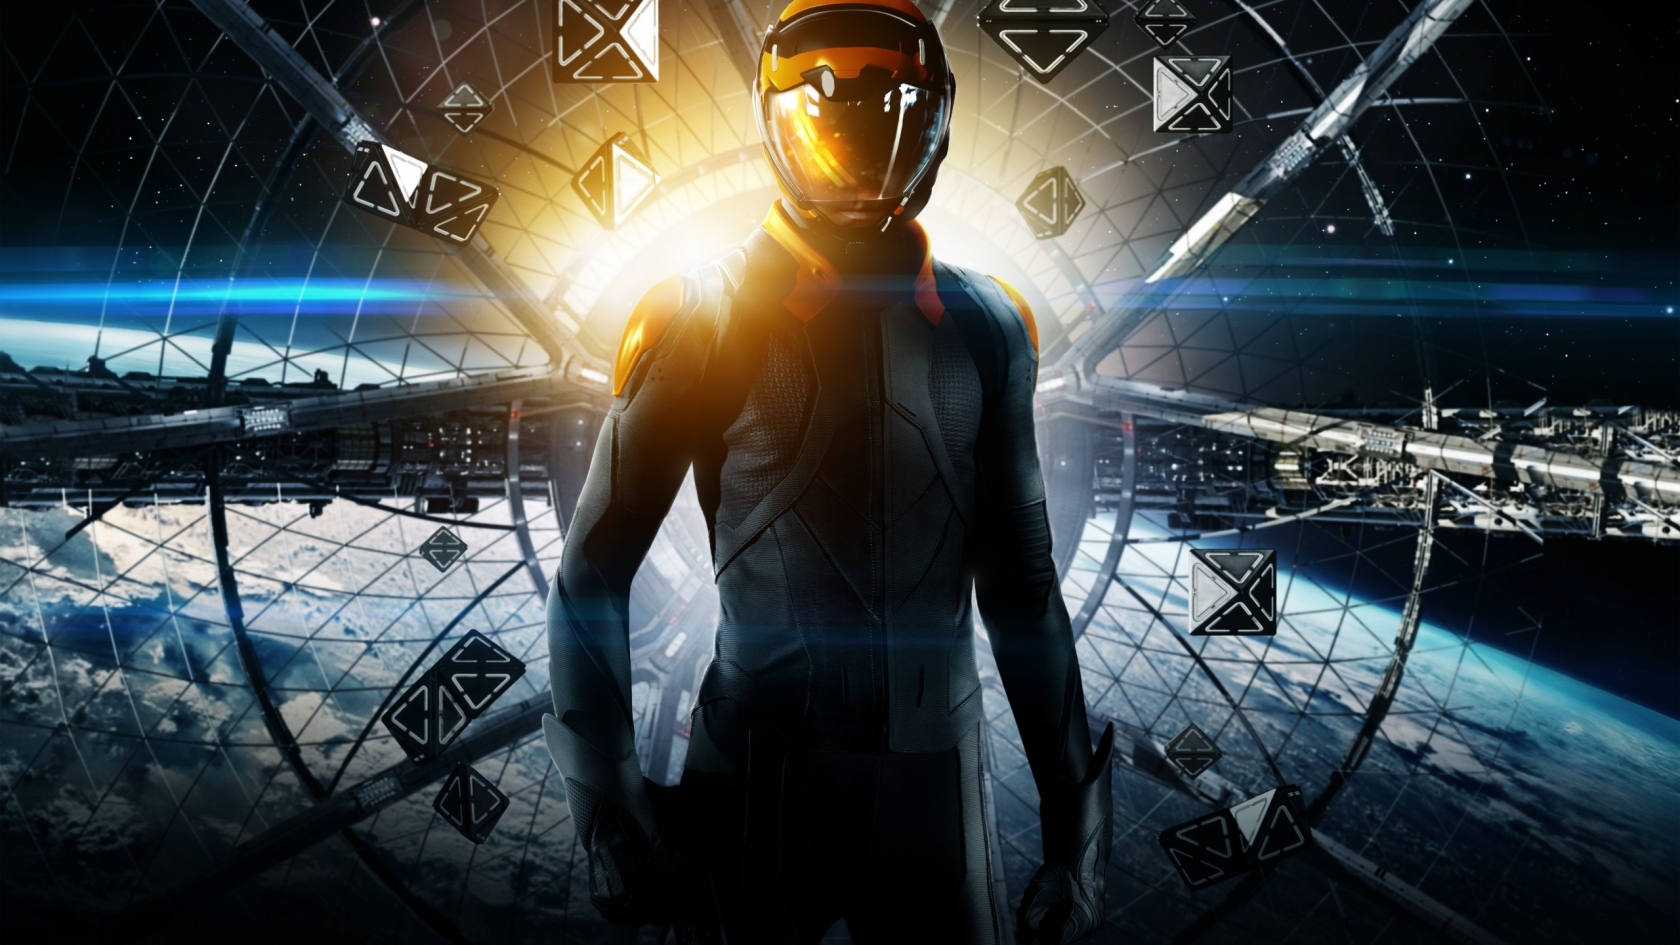 Ender's Game Poster for 1680 x 945 HDTV resolution